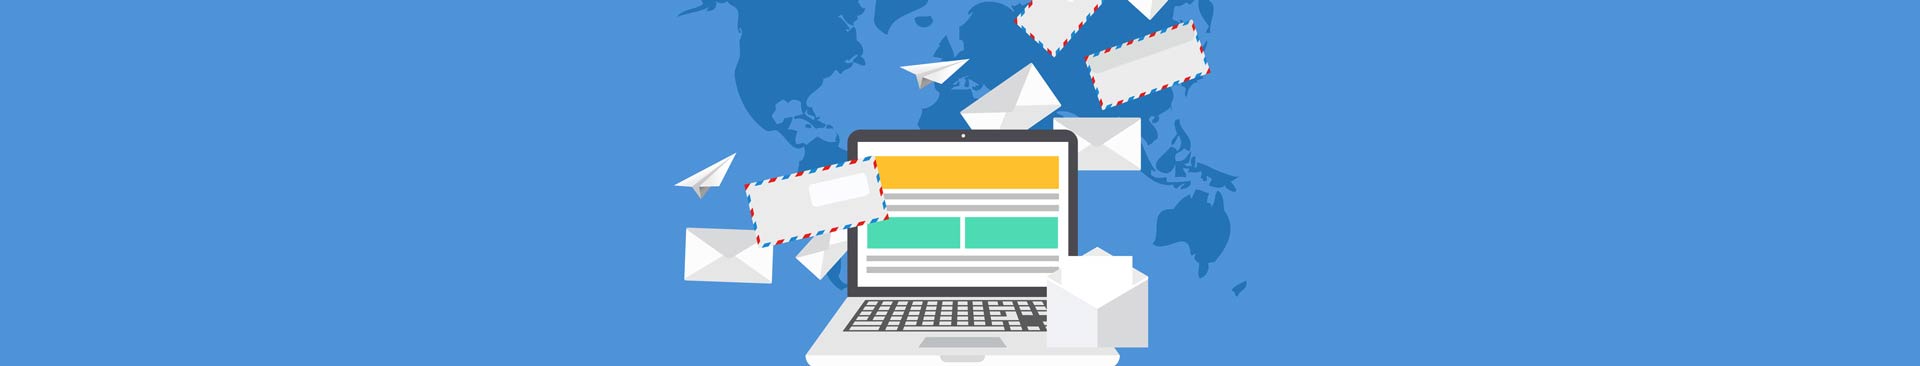 Segmenta tus campañas de email marketing creando grupos en tus listas de MailChimp